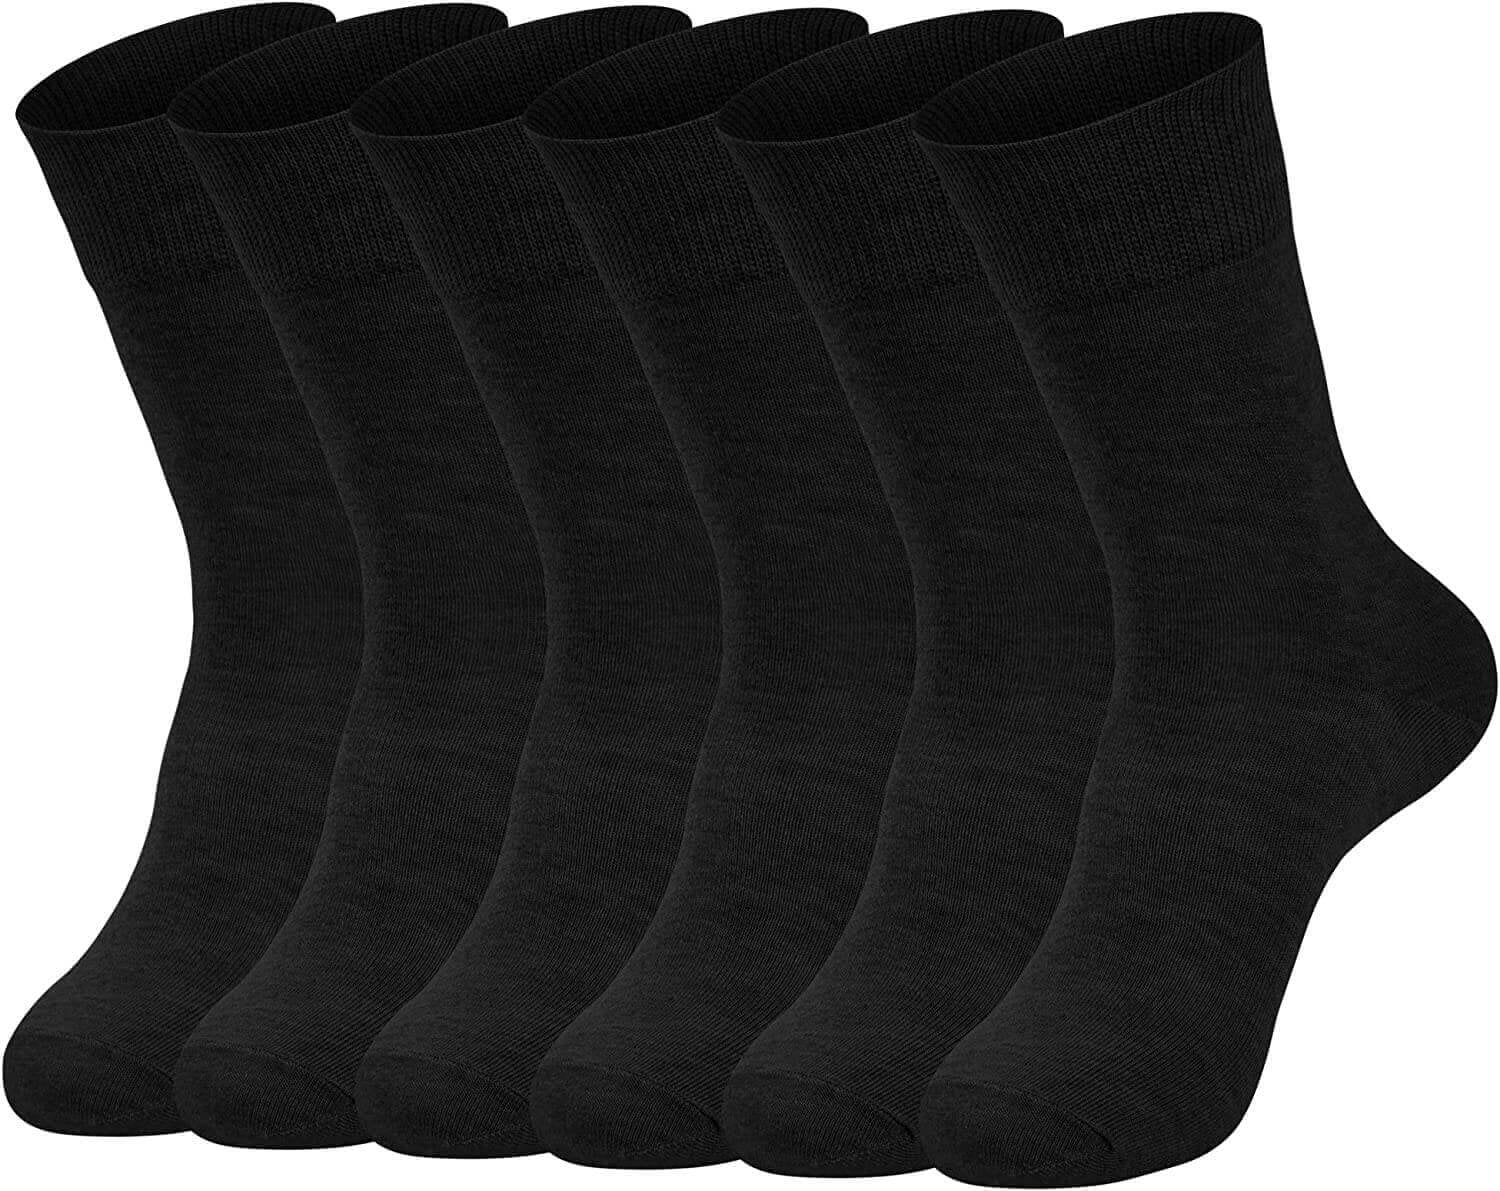 6-PACK Men's Dress Socks, Patterned Crew Socks, Black, 9-11 - Walmart.com